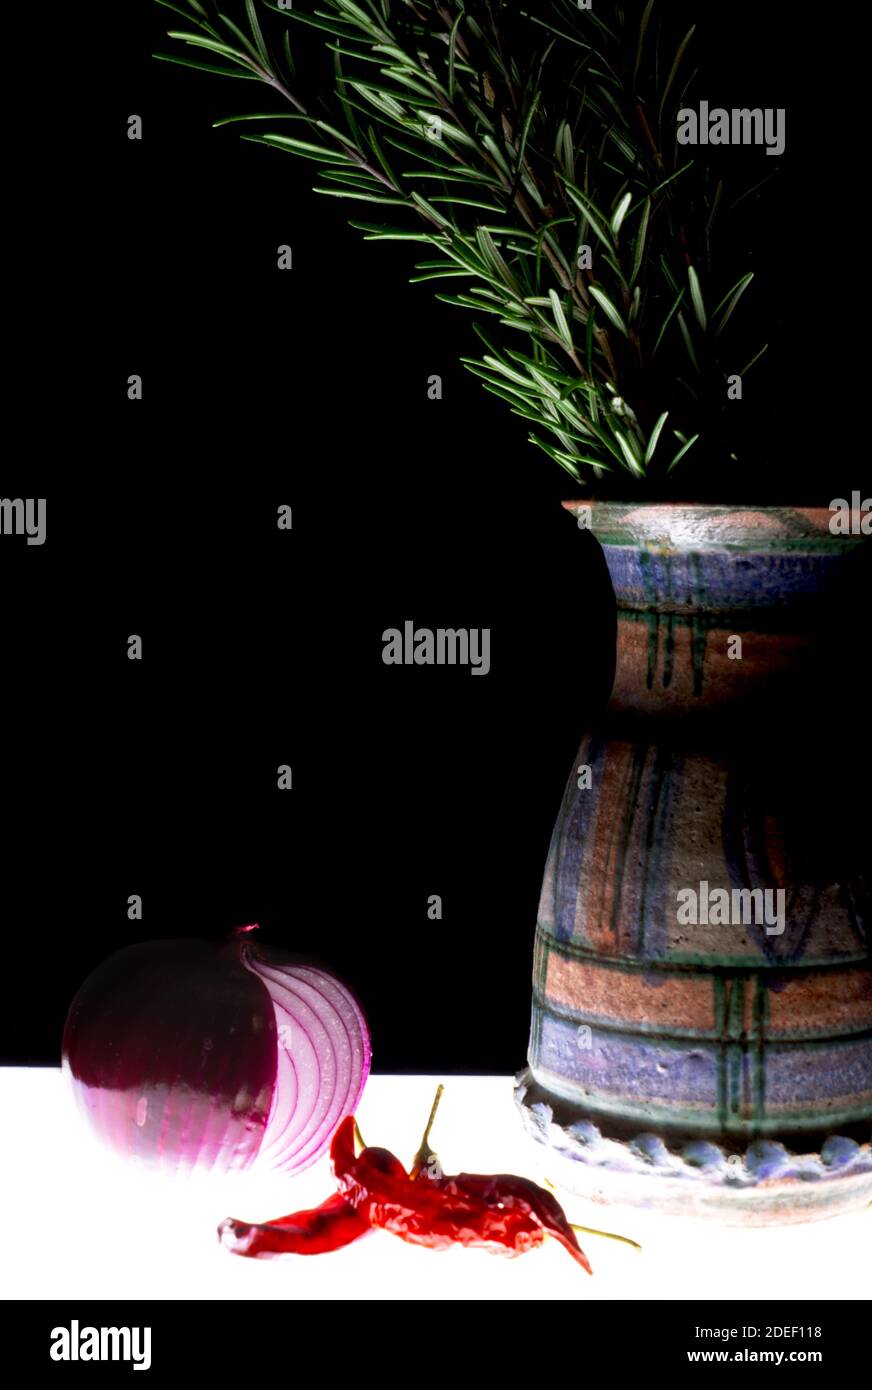 jarrón de terracota decorado a mano con romero de cebolla y chile en un ambiente oscuro Foto de stock